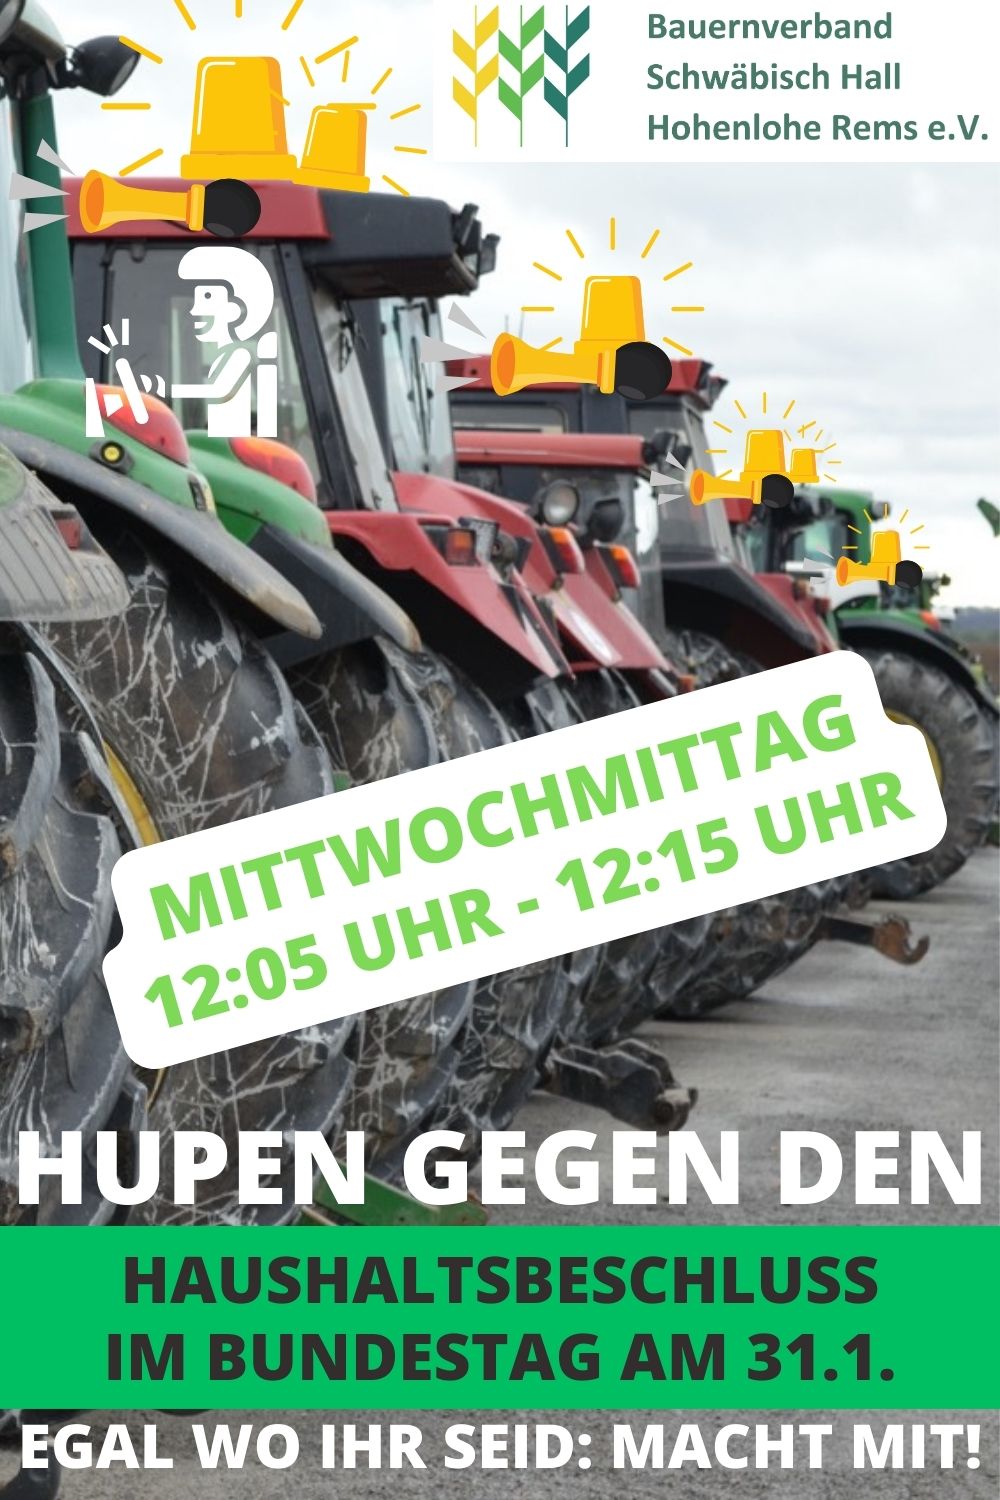 Hupen gegen den Haushaltsbeschluss am 31.1. - Bauernverband Schwäbisch Hall  - Hohenlohe - Rems e.V.